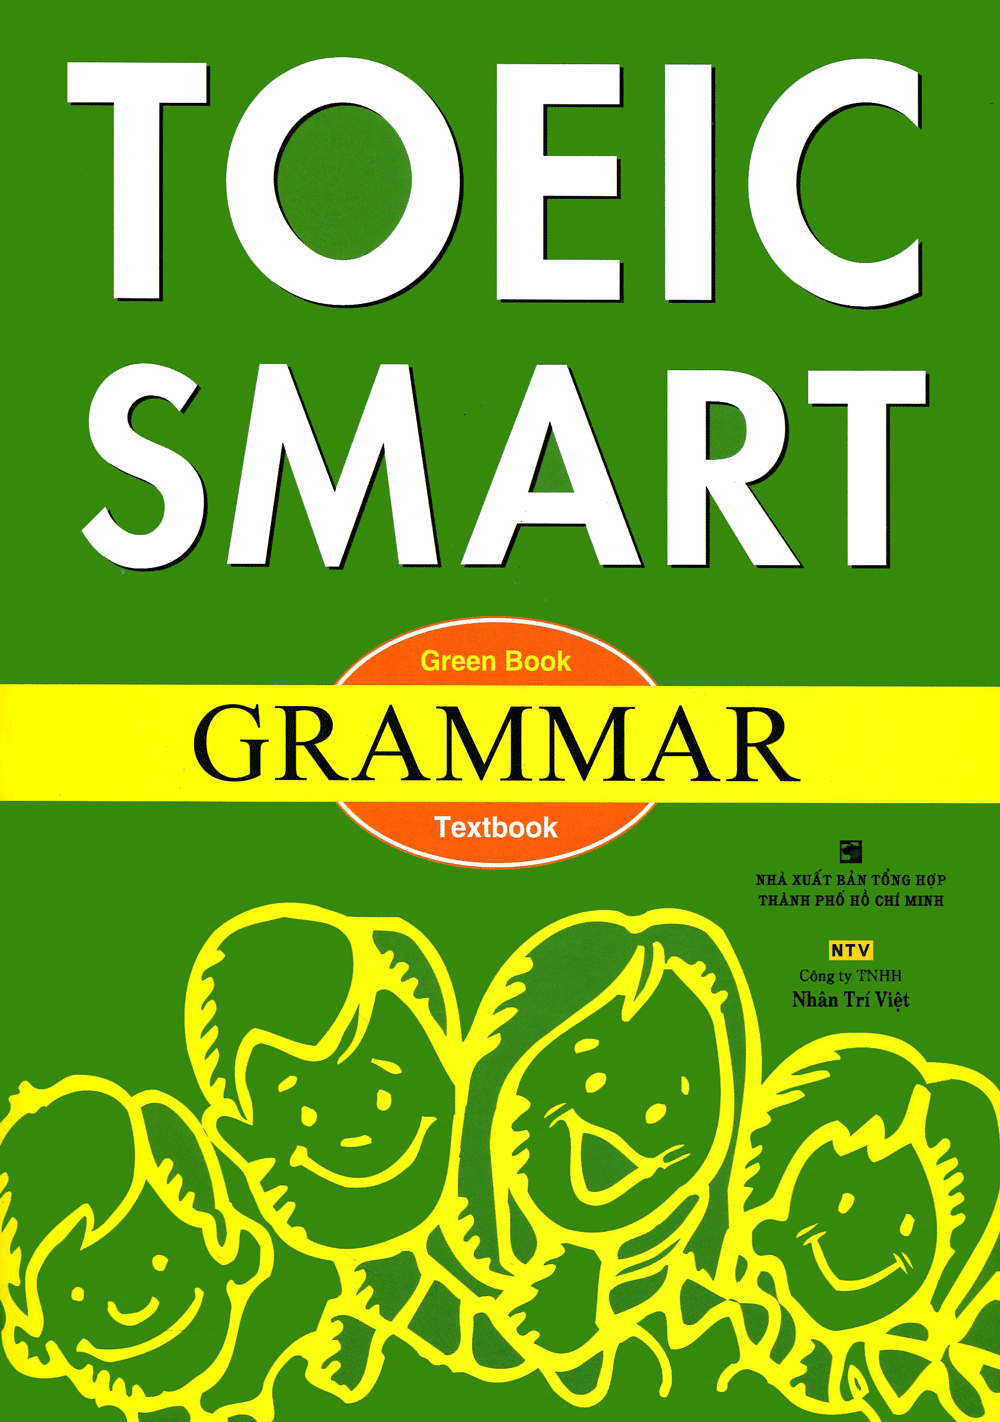  Toeic Smart - Green Book Grammar 